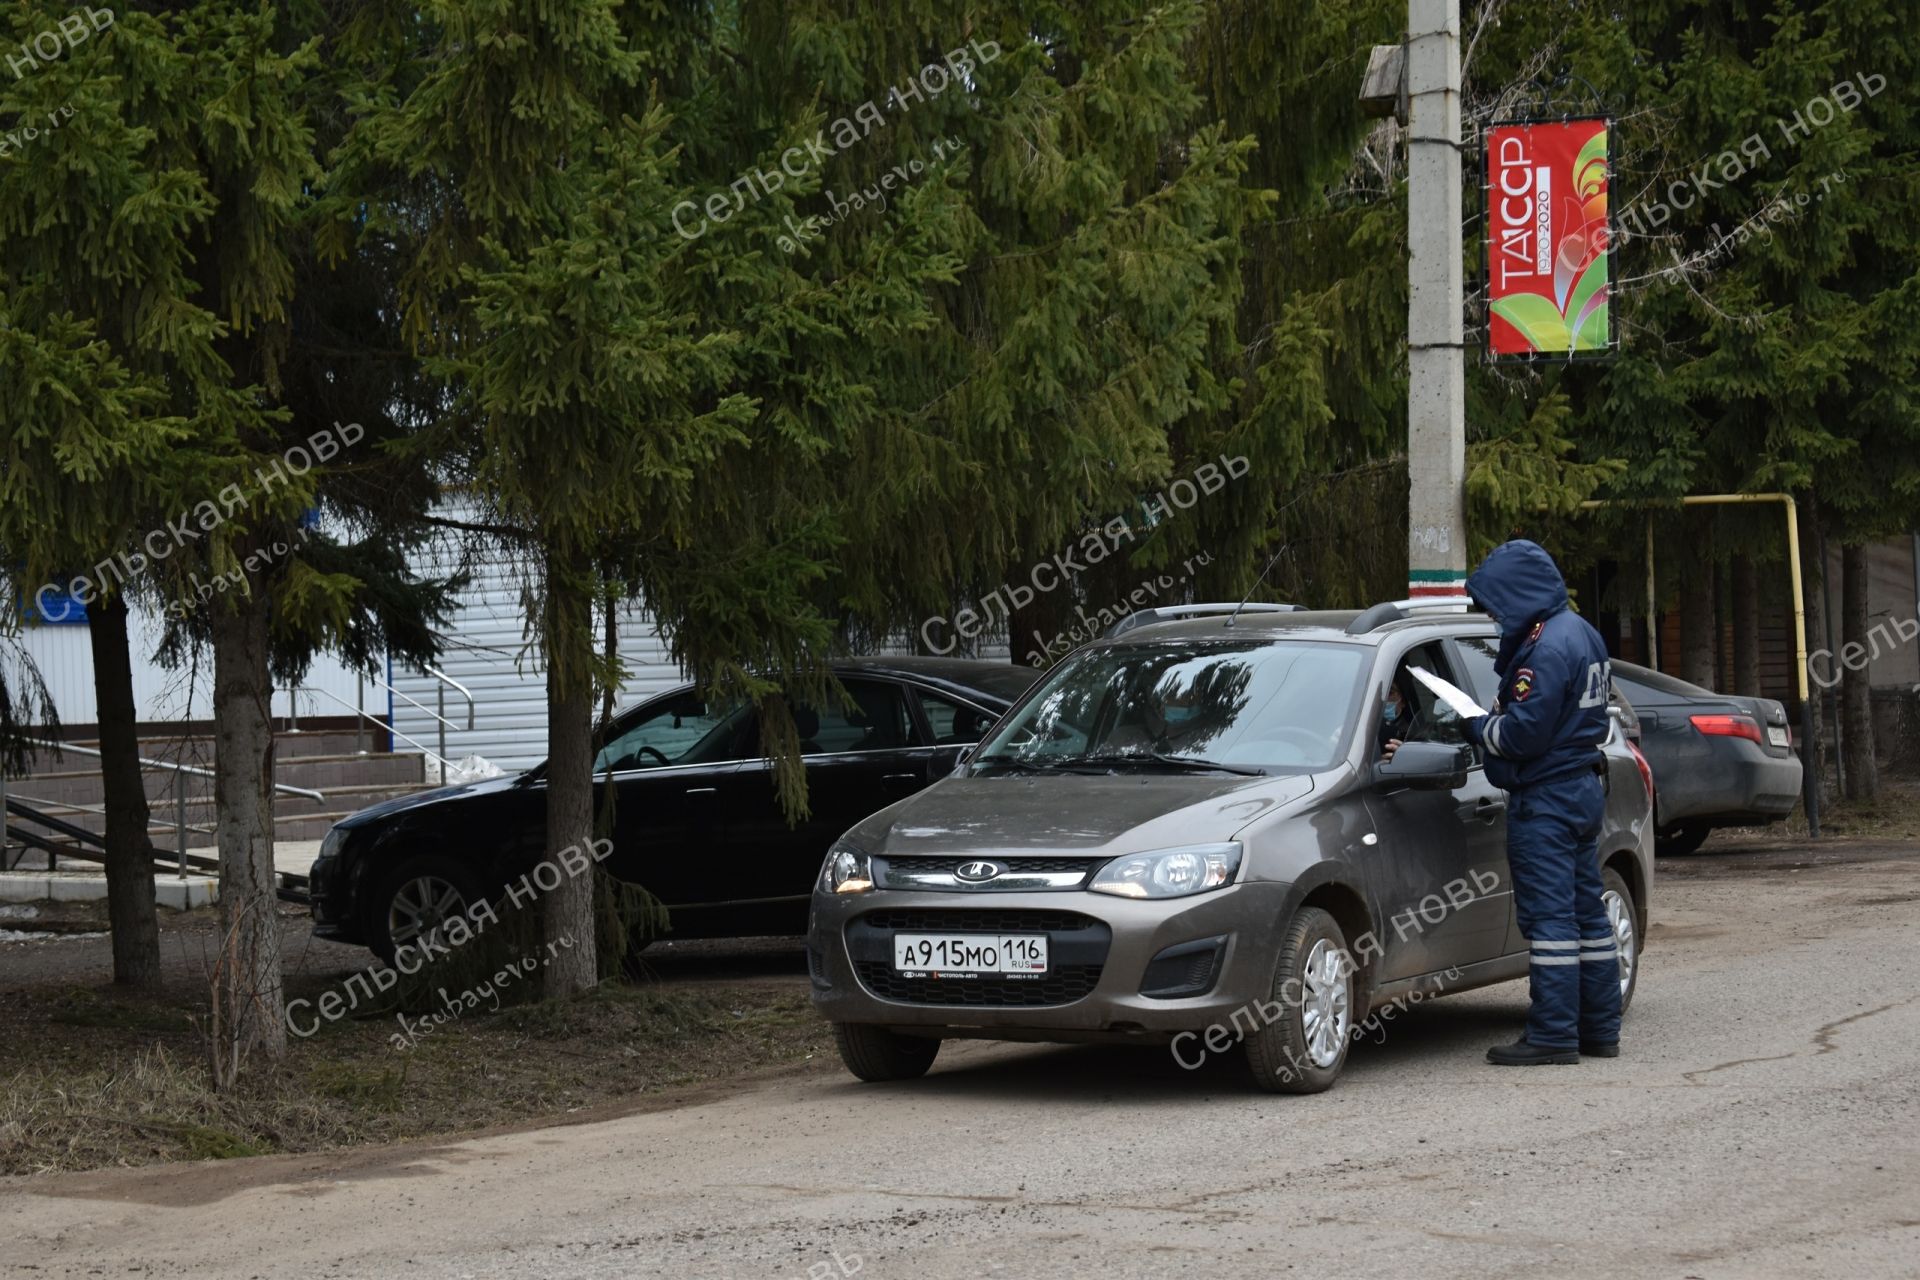 Аксубай районында Роспотребнадзор һәм полиция хезмәткәрләре үз-үзеңне изоляцияләү таләпләрен бозучыларга беркетмәләр төзиләр